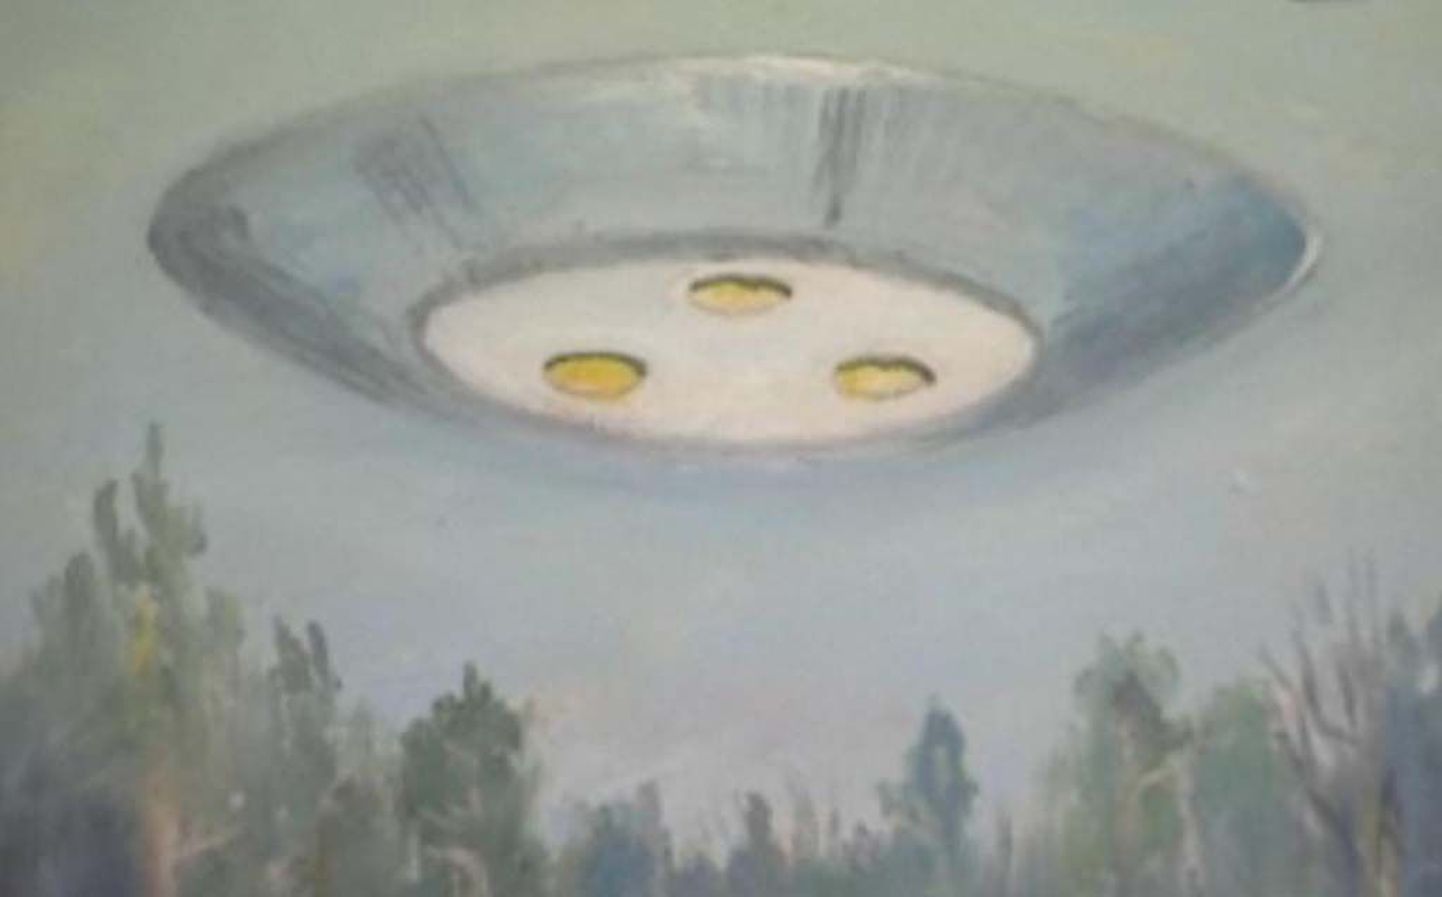 Aastate eest Tallinnast Kilingi-Nõmmele kolinud Tanel on kohtunud ingliga ja maalinud maja lähedalt üle lennanud ufot.